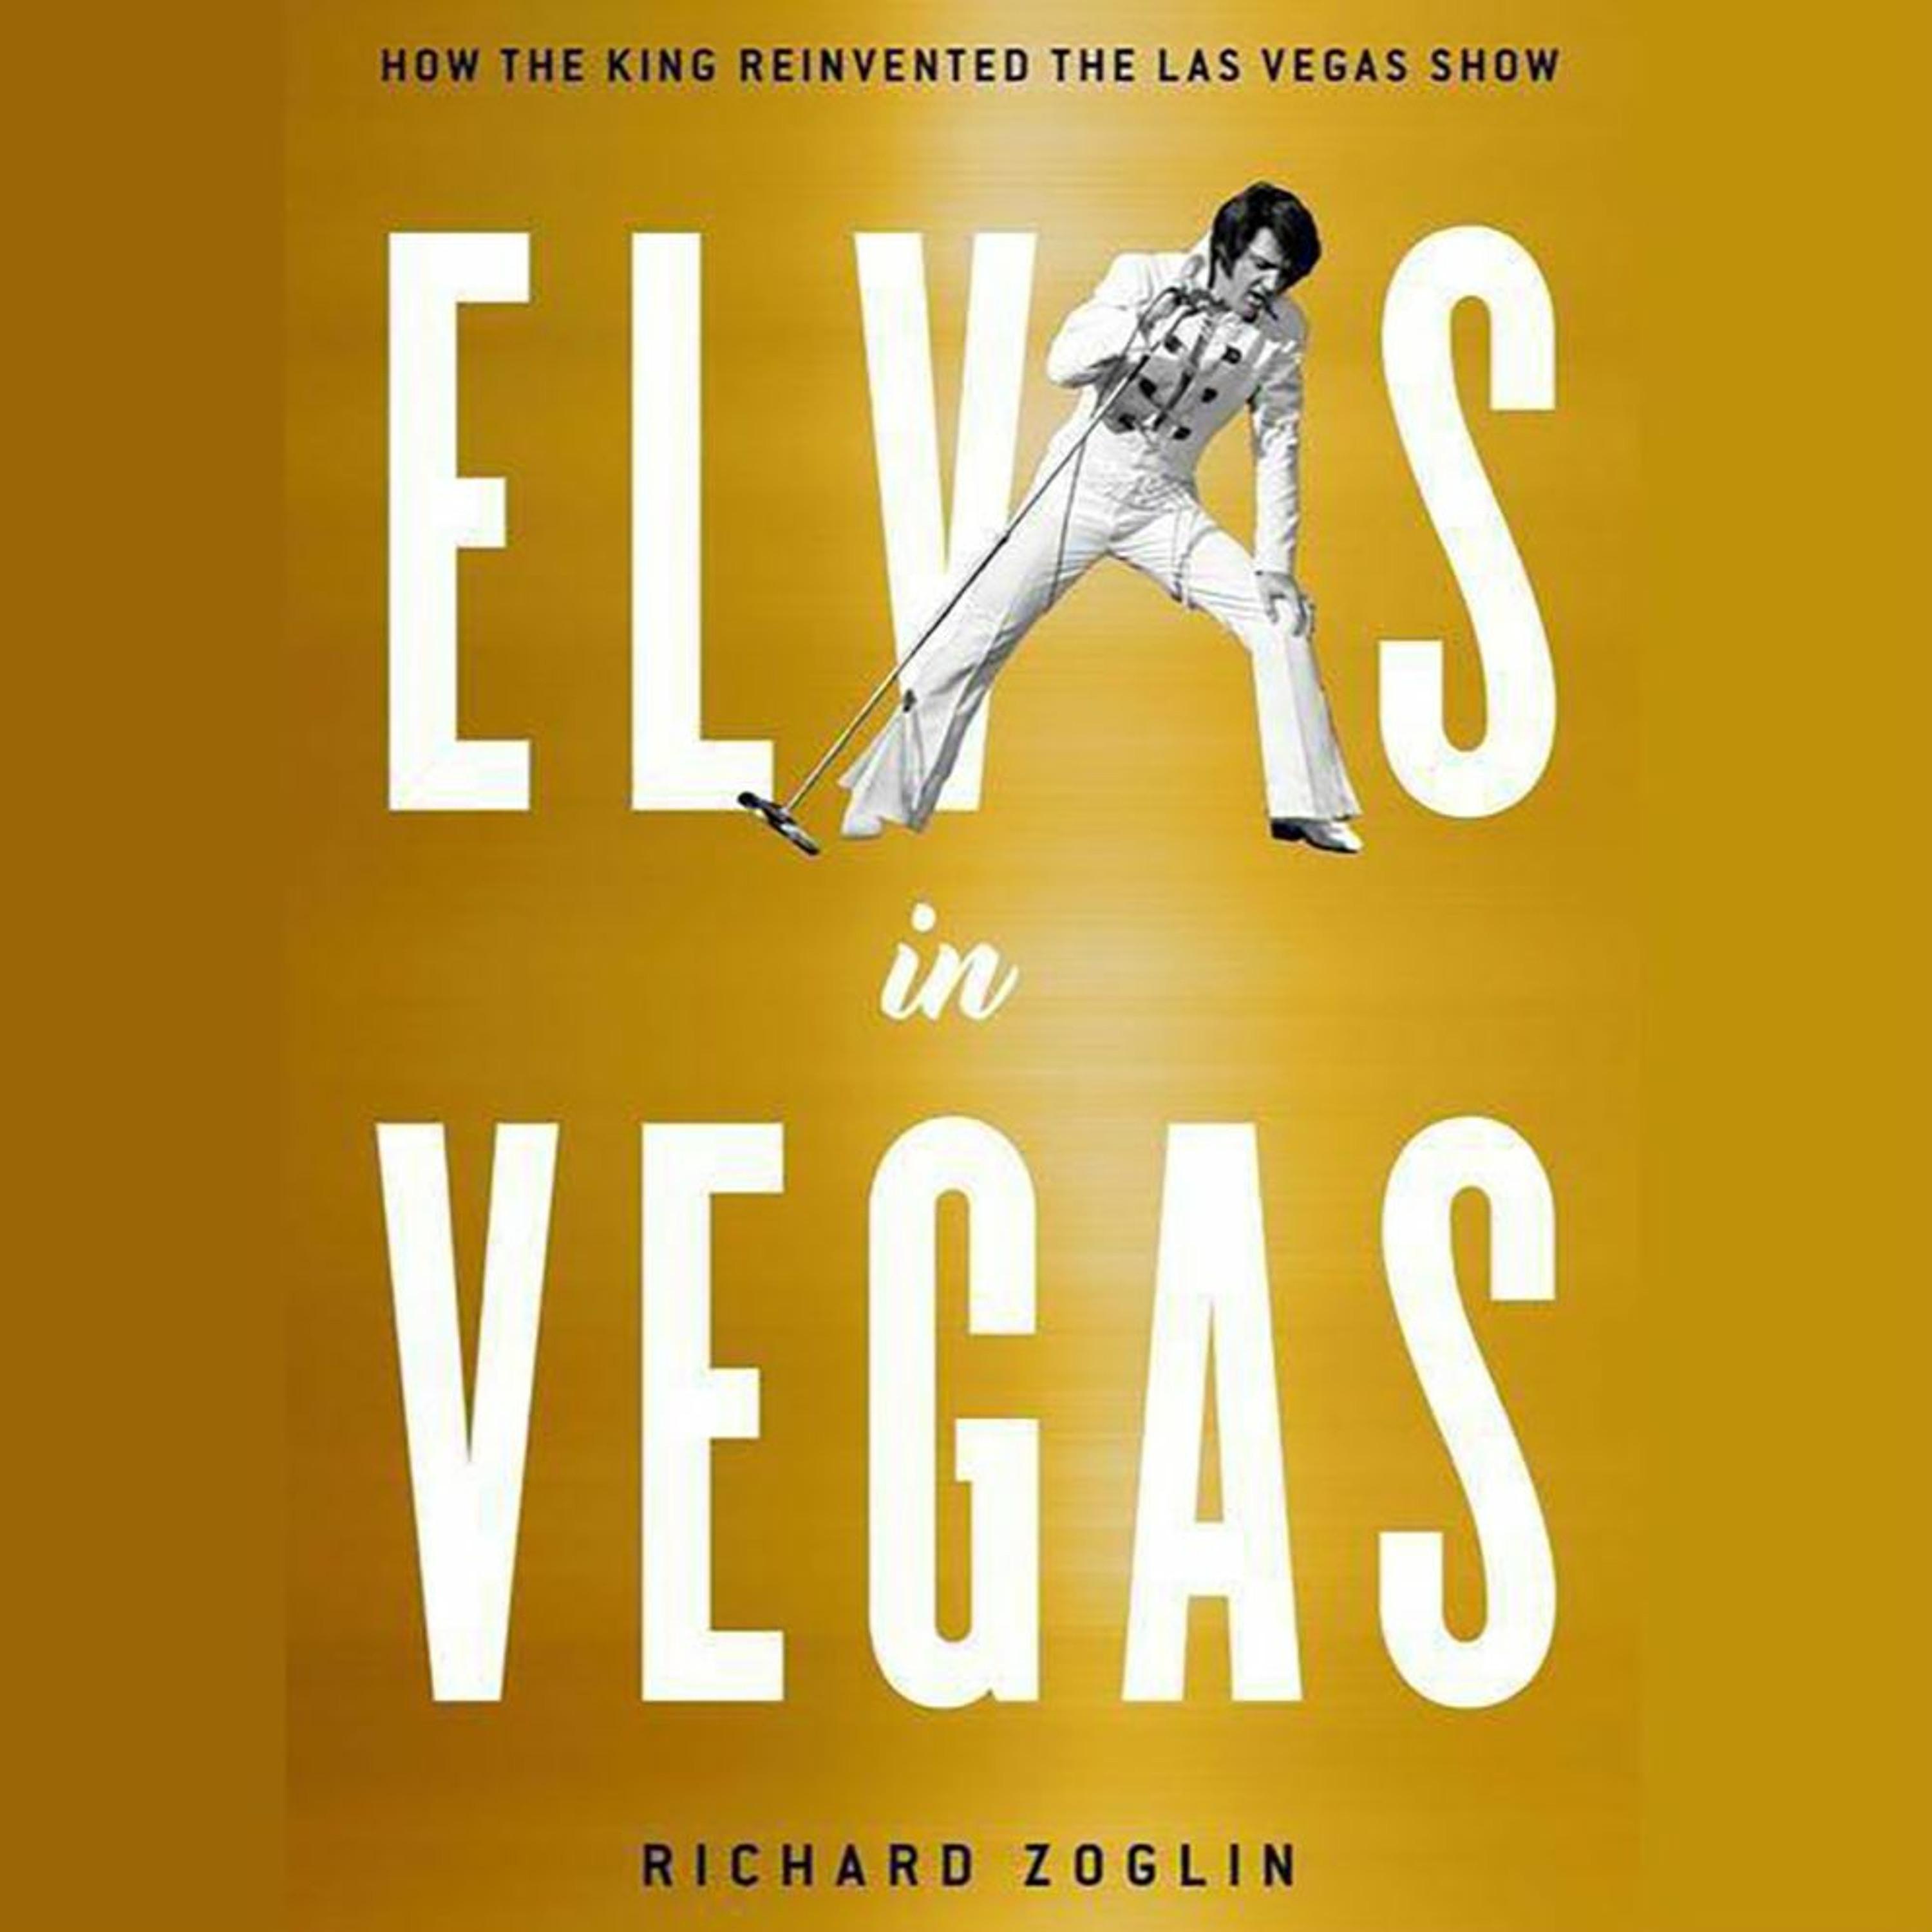 ”Elvis in Vegas” - The Complete Richard Zoglin Interview